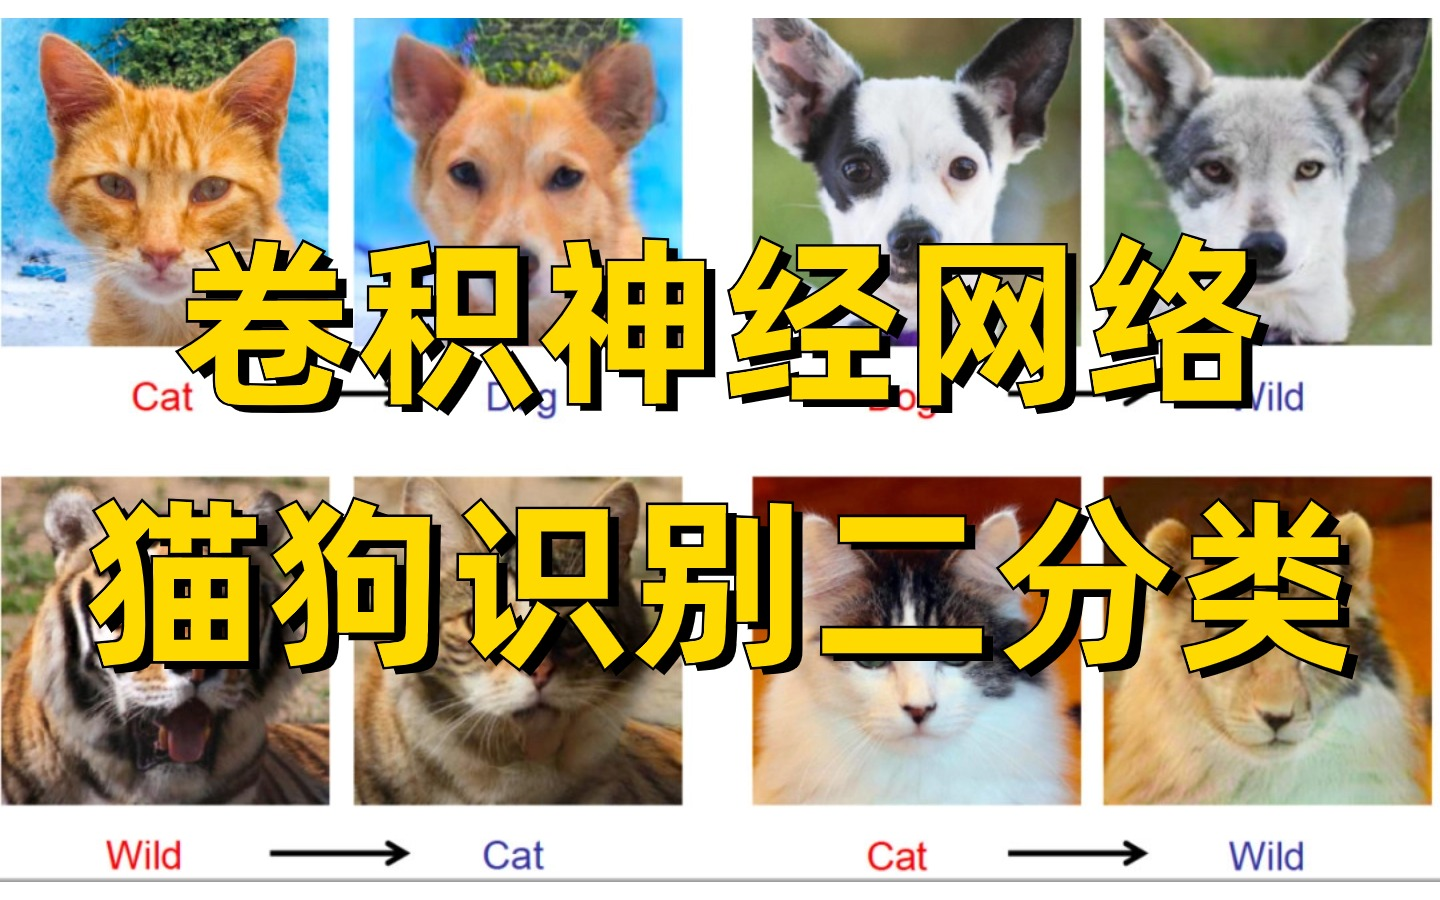 基于卷积神经网络的猫狗识别二分类实战，初学者必备的图像分类任务！